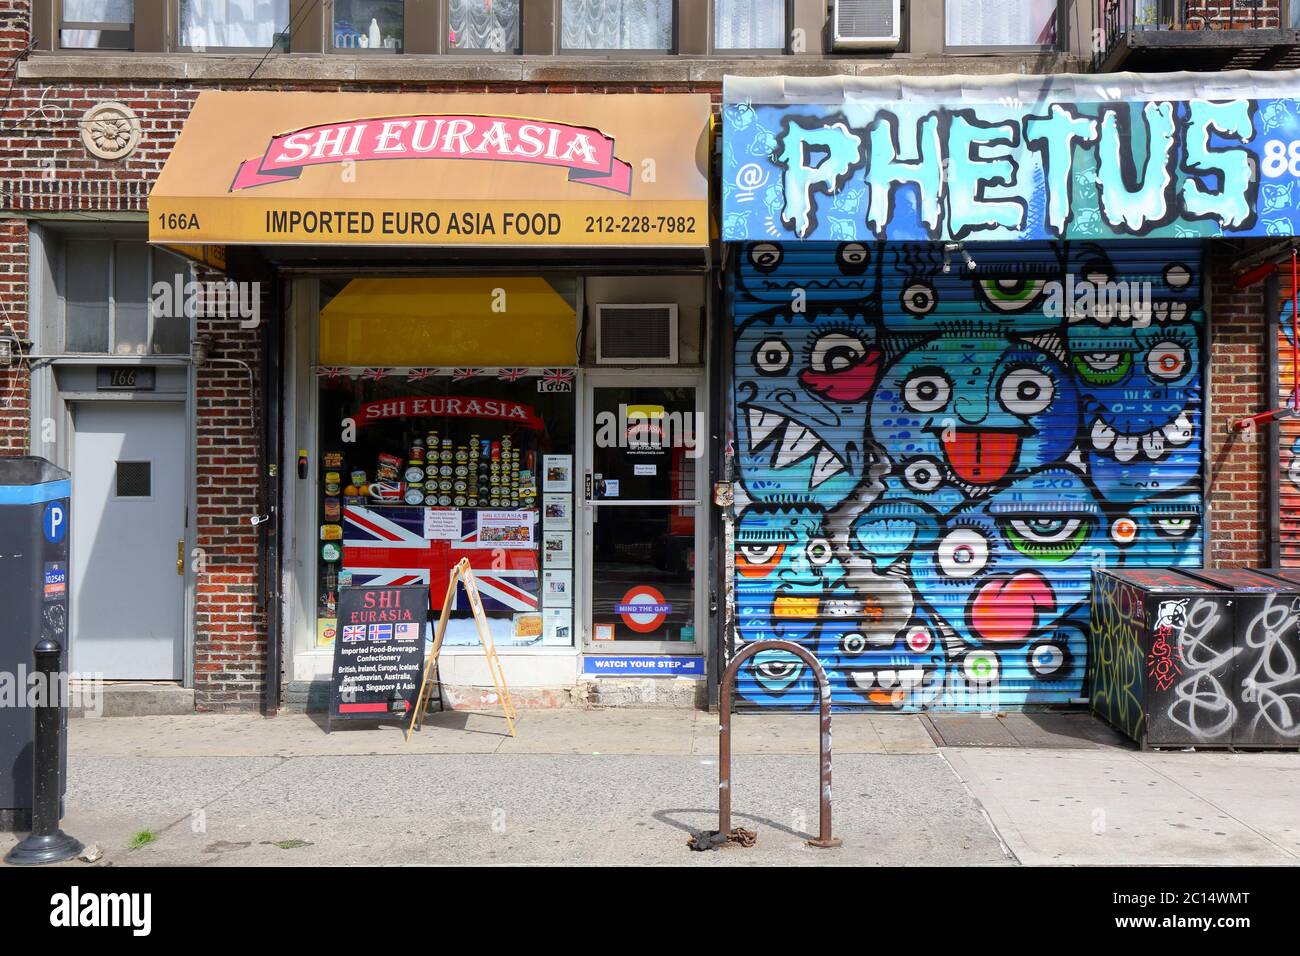 [Escaparate histórico] Shi Eurasia, 166A Allen St, Nueva York, Nueva York, Nueva York, Nueva York, foto del escaparate de una tienda de comida británica importada en el Lower East Side de Manhattan. Foto de stock